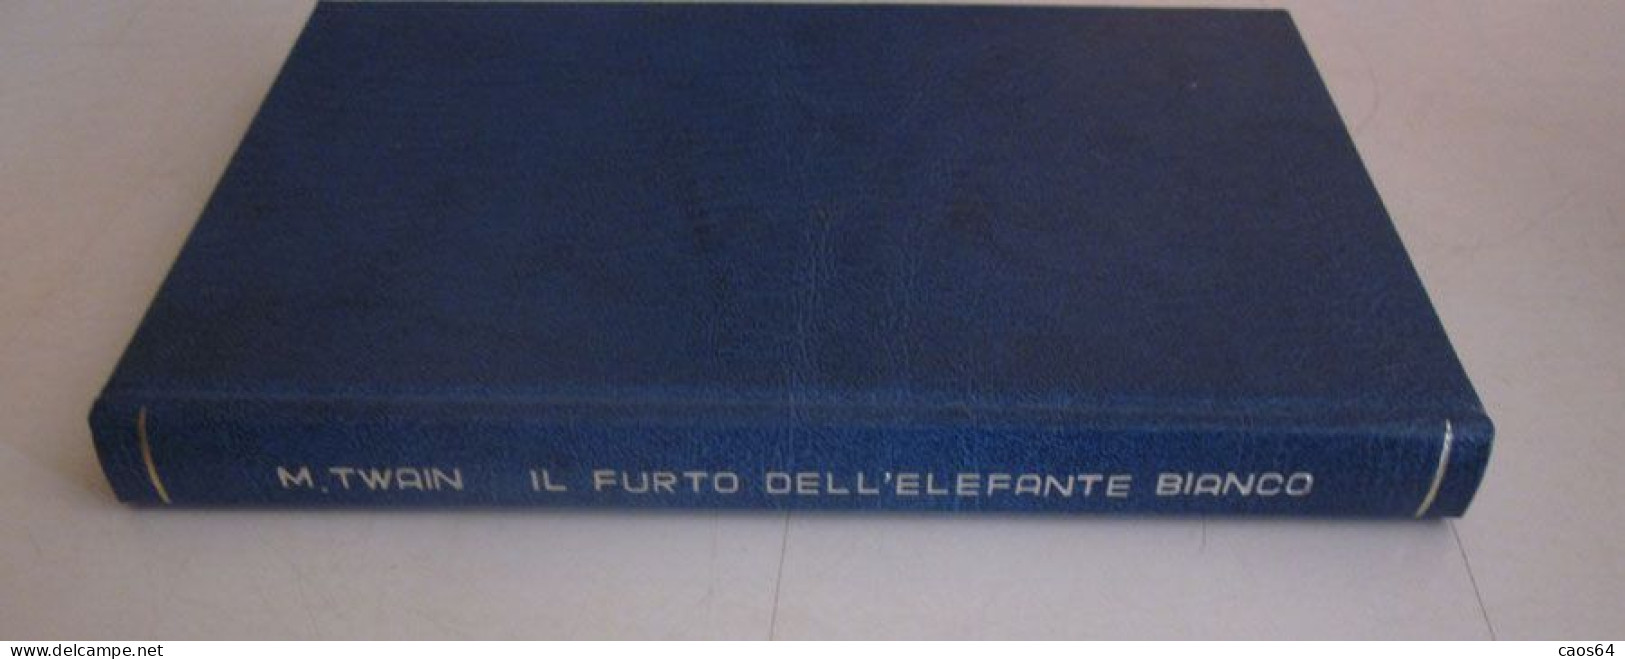 Il Furto Dell'elefante Bianco Mark Twain Rizzoli BUR 1952 - Clásicos